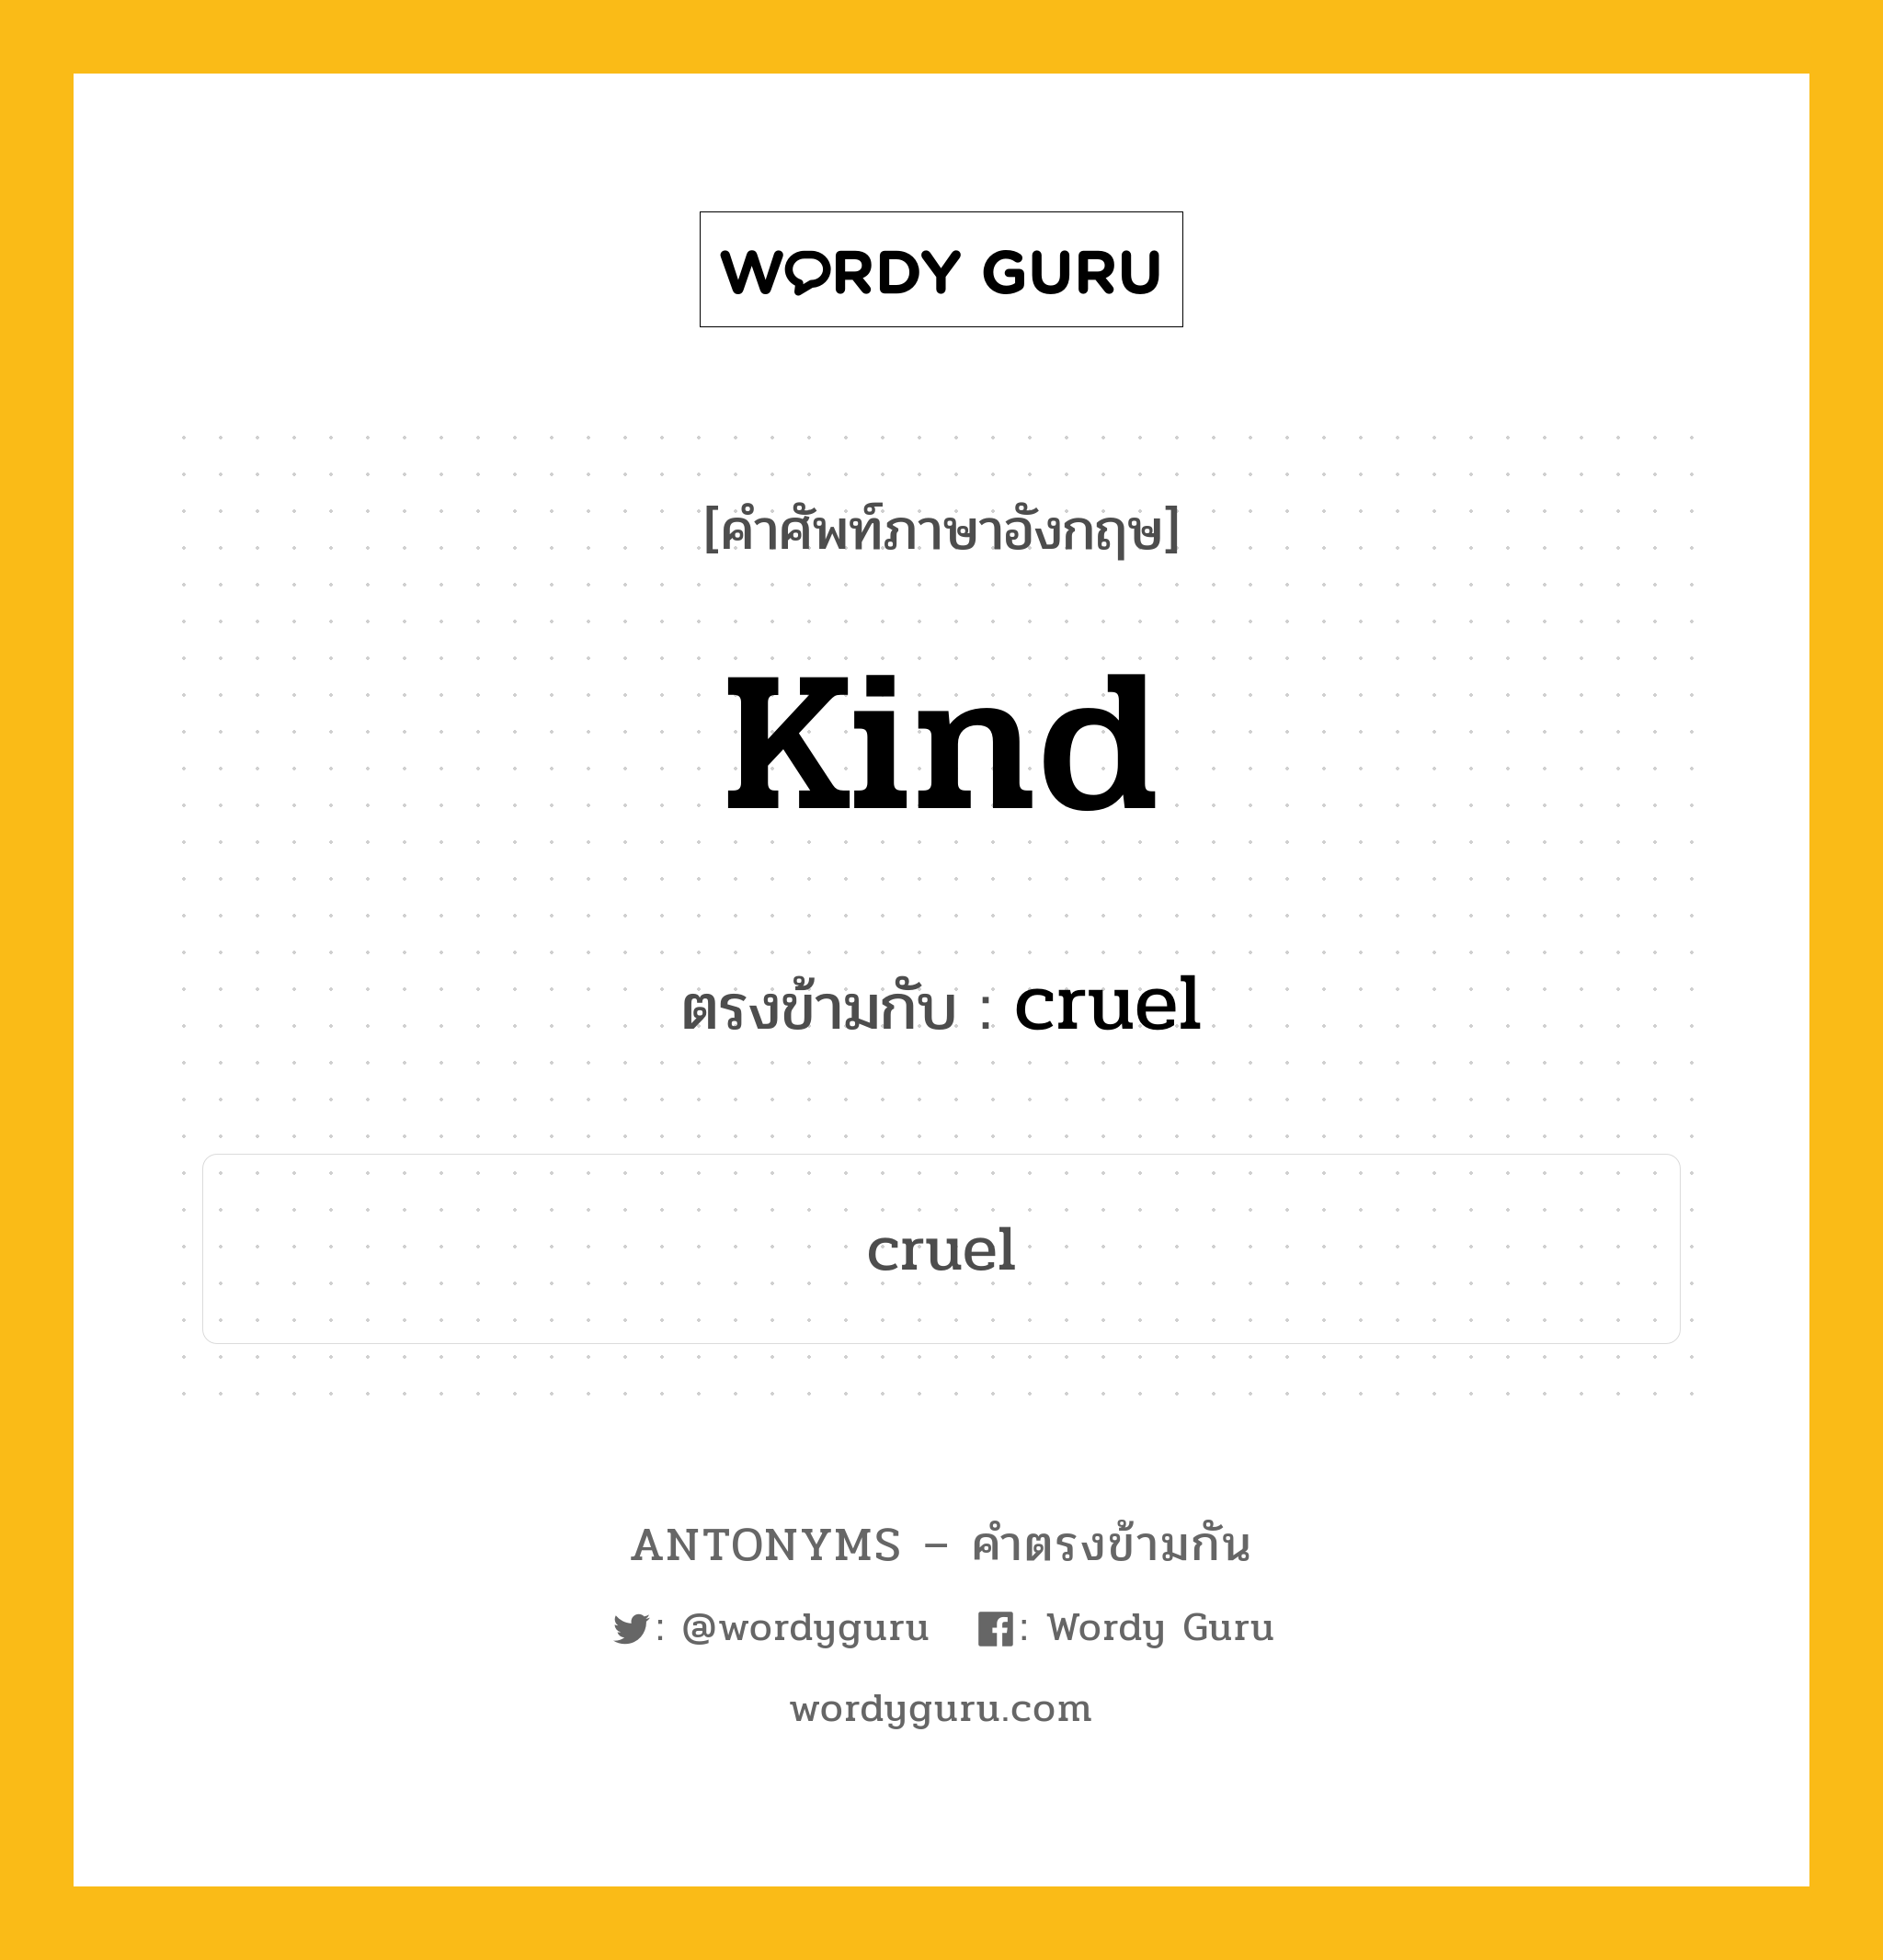 kind เป็นคำตรงข้ามกับคำไหนบ้าง?, คำศัพท์ภาษาอังกฤษ kind ตรงข้ามกับ cruel หมวด cruel